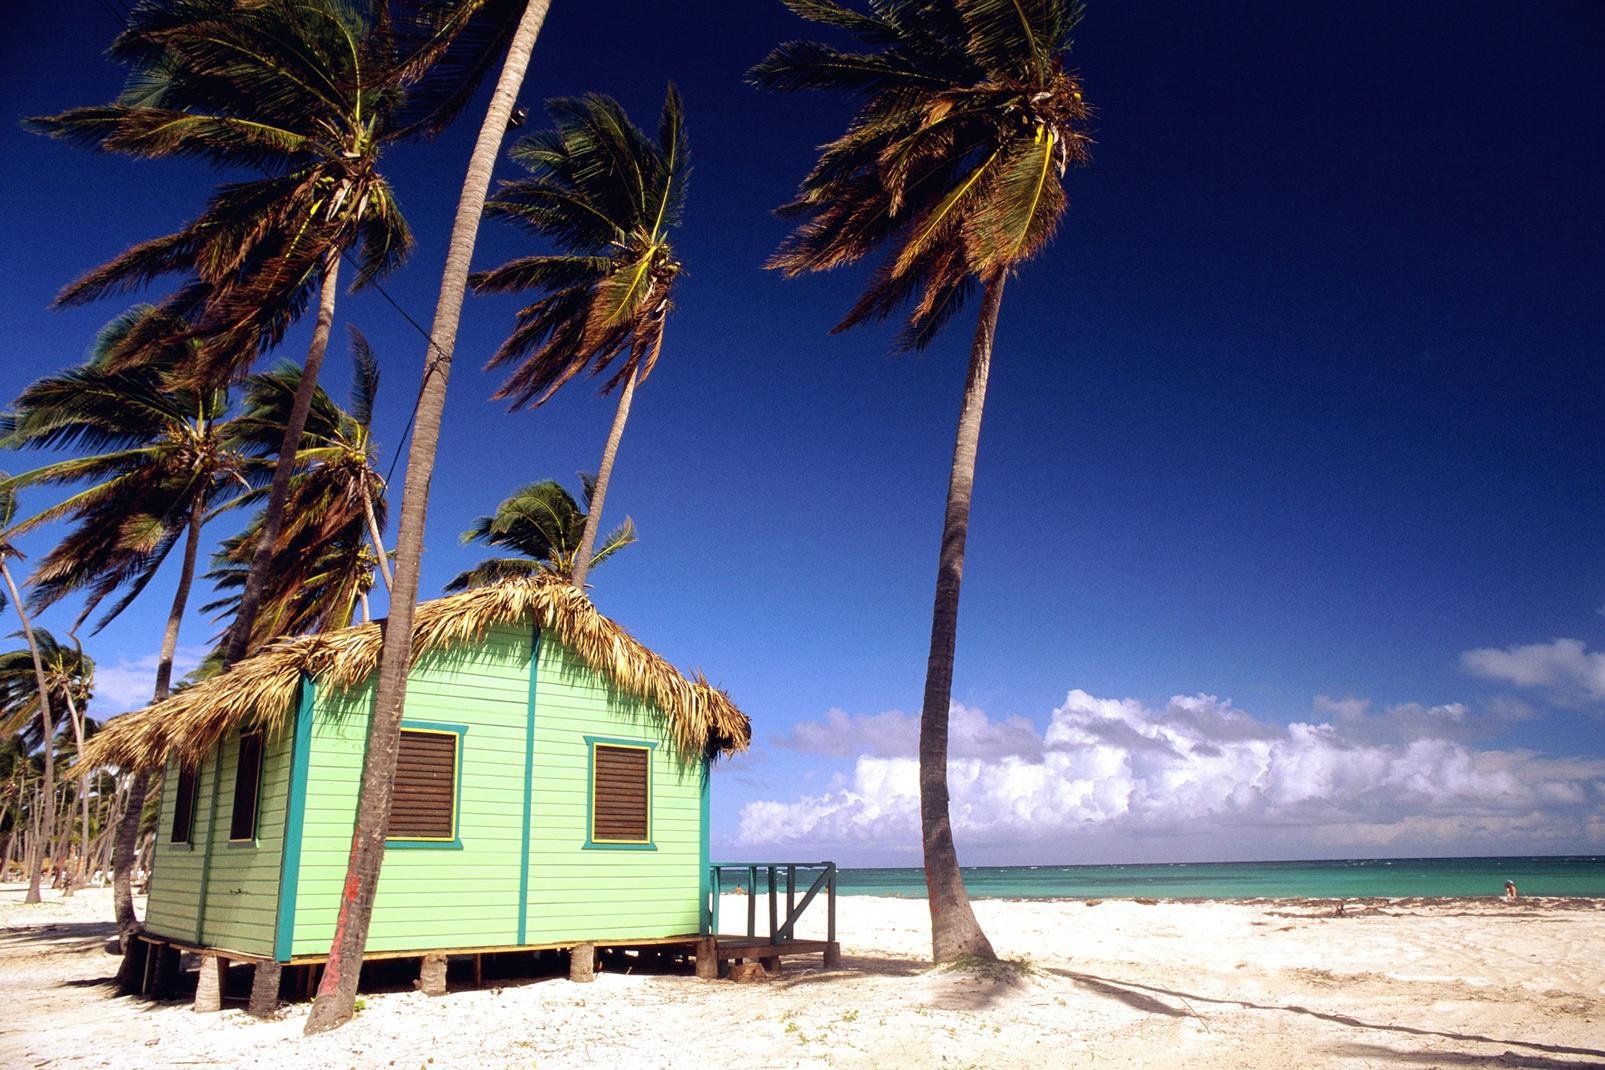 Tra il Mar dei Caraibi e l'Oceano Atlantico, Punta Cana è la stazione balneare più famosa della Repubblica Dominicana. Ed a ragione... Le meravigliose spiagge private del canale La Morana che si estendono per oltre 40 km potrebbero quasi far parte del patrimonio mondiale. Acqua trasparente, palme da cocco, sabbia chiara... un cocktail magico per trascorrere eccellenti vacanze rilassanti. Al sole ...